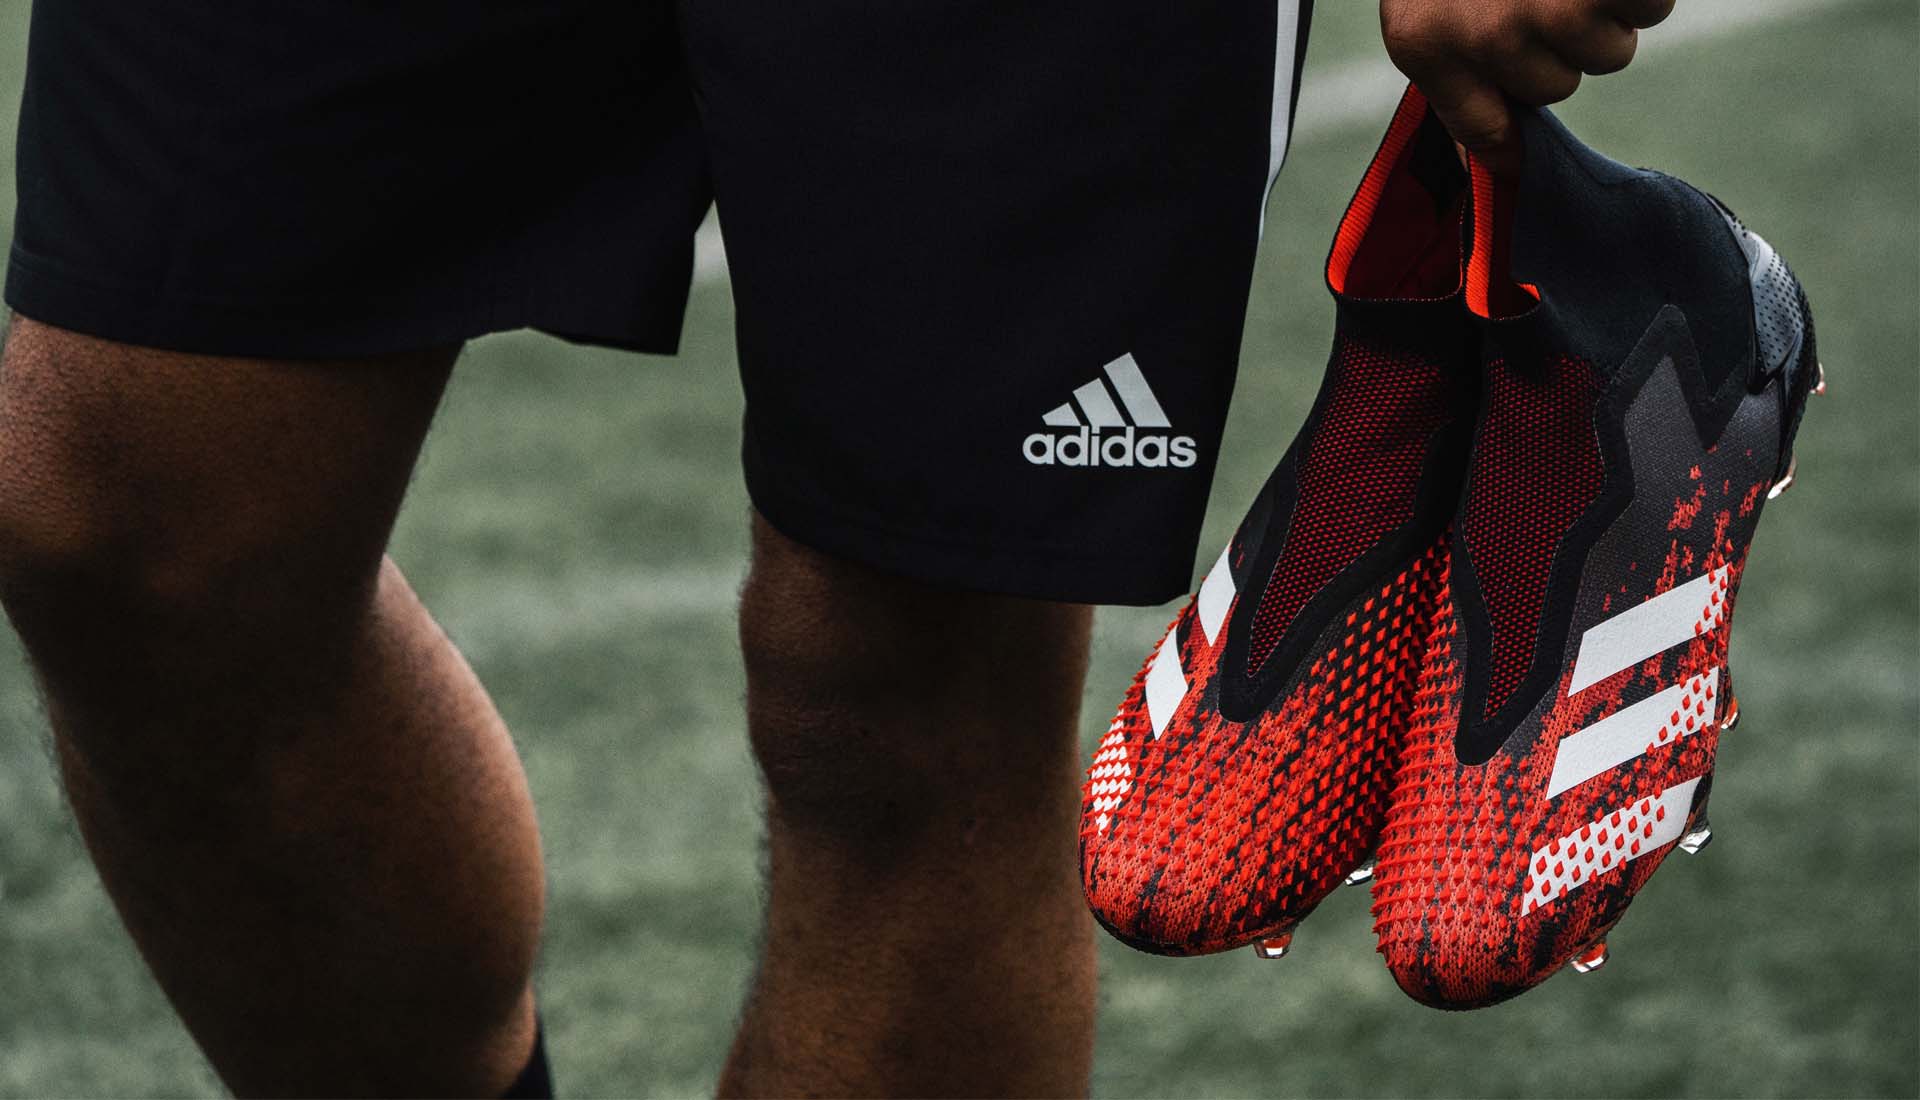 Bộ sưu tập giày đá bóng Adidas Mutator Pack được ra mắt với thế hệ mới Adidas Predator 20